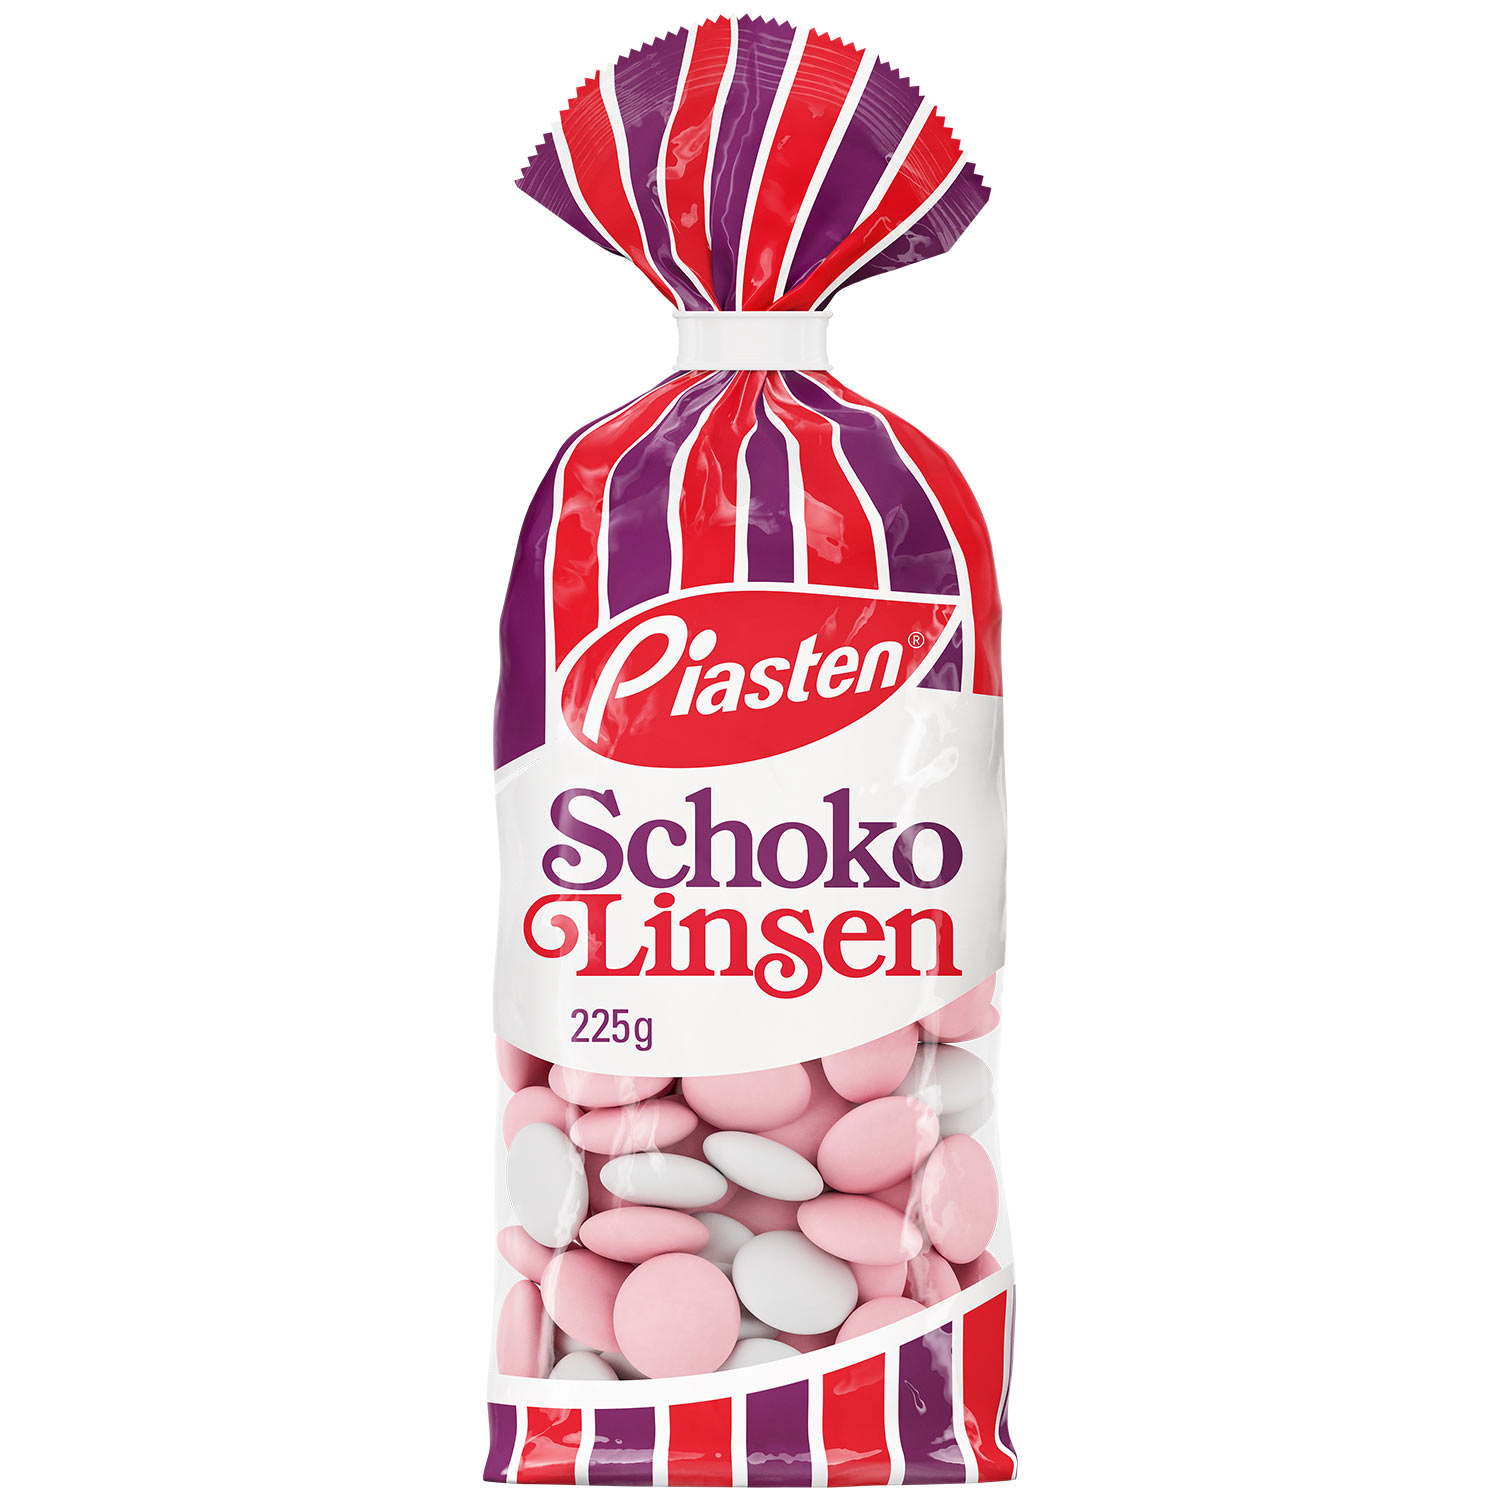 Piasten Schoko Linsen 225g | Online kaufen im World of Sweets Shop